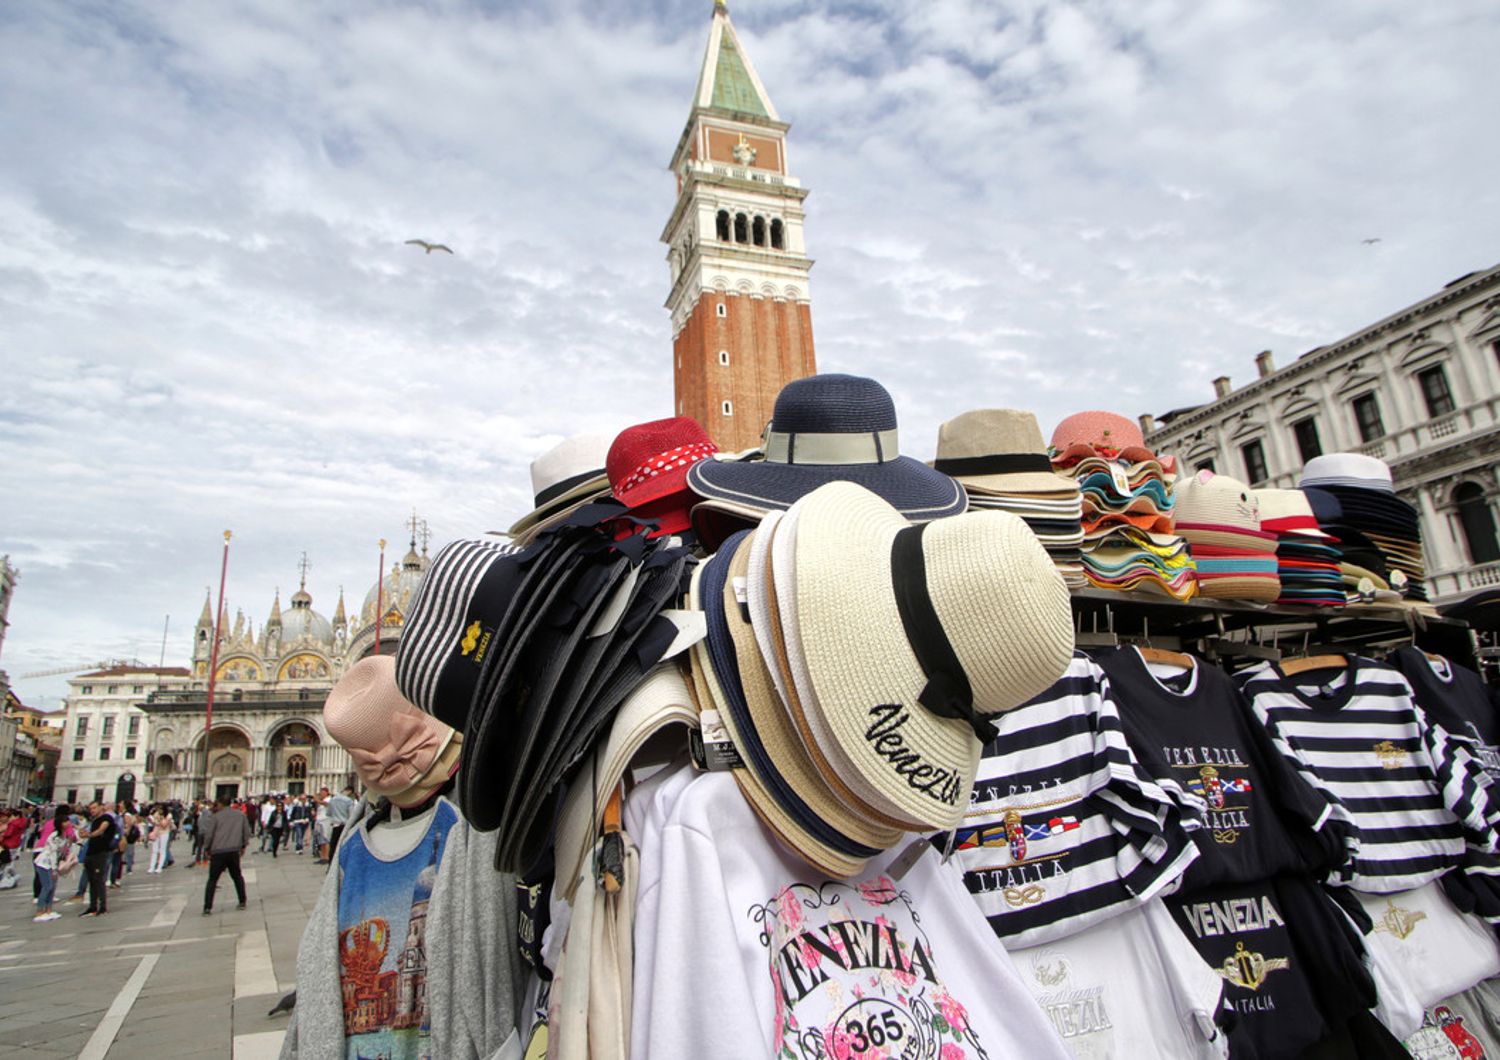 Economia sommersa: bancarelle abusive di souvenir a Venezia